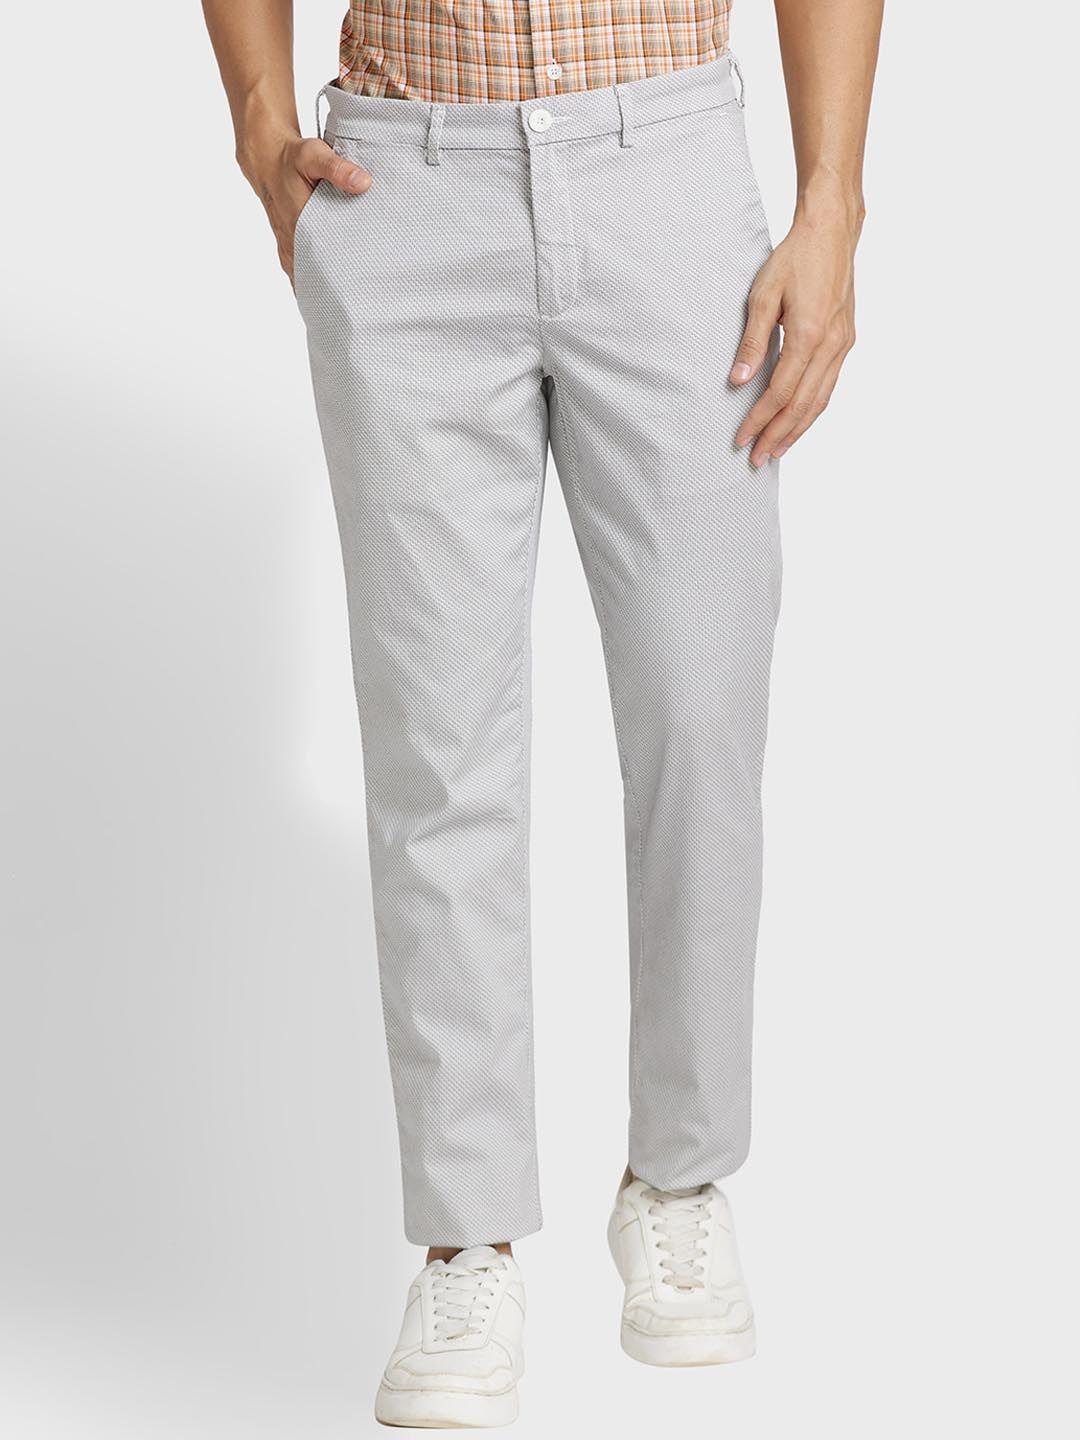 colorplus-men-mid-rise-cotton-regular-fit-trousers